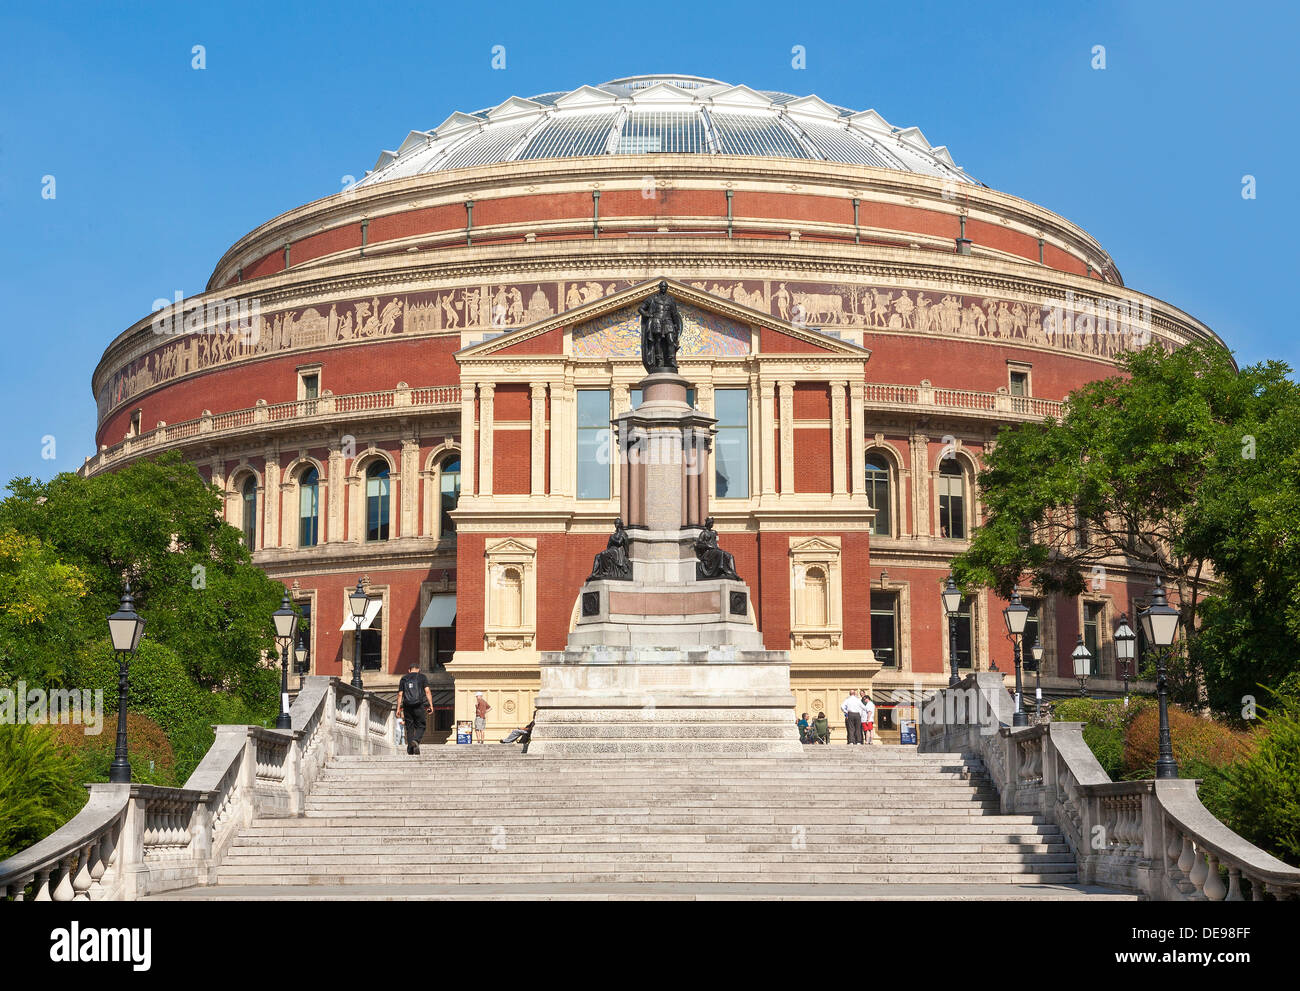 El Royal Albert Hall, Londres, Reino Unido, vista trasera de Prince Consort Road, Foto de stock